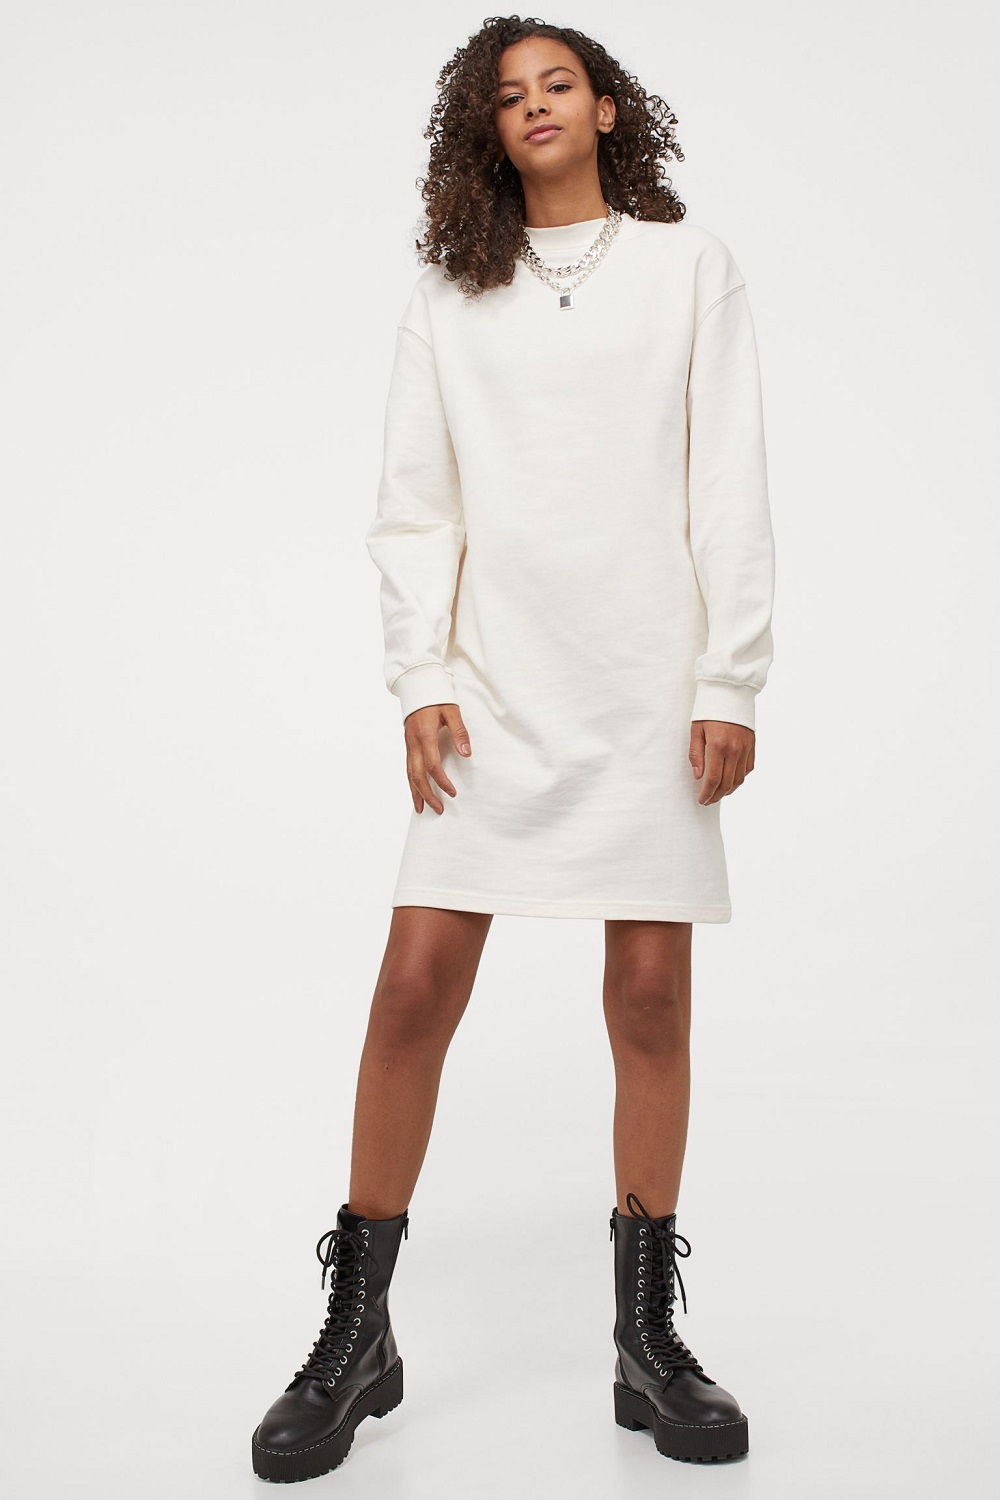 H&M sweatshirt haljine zima 2020.